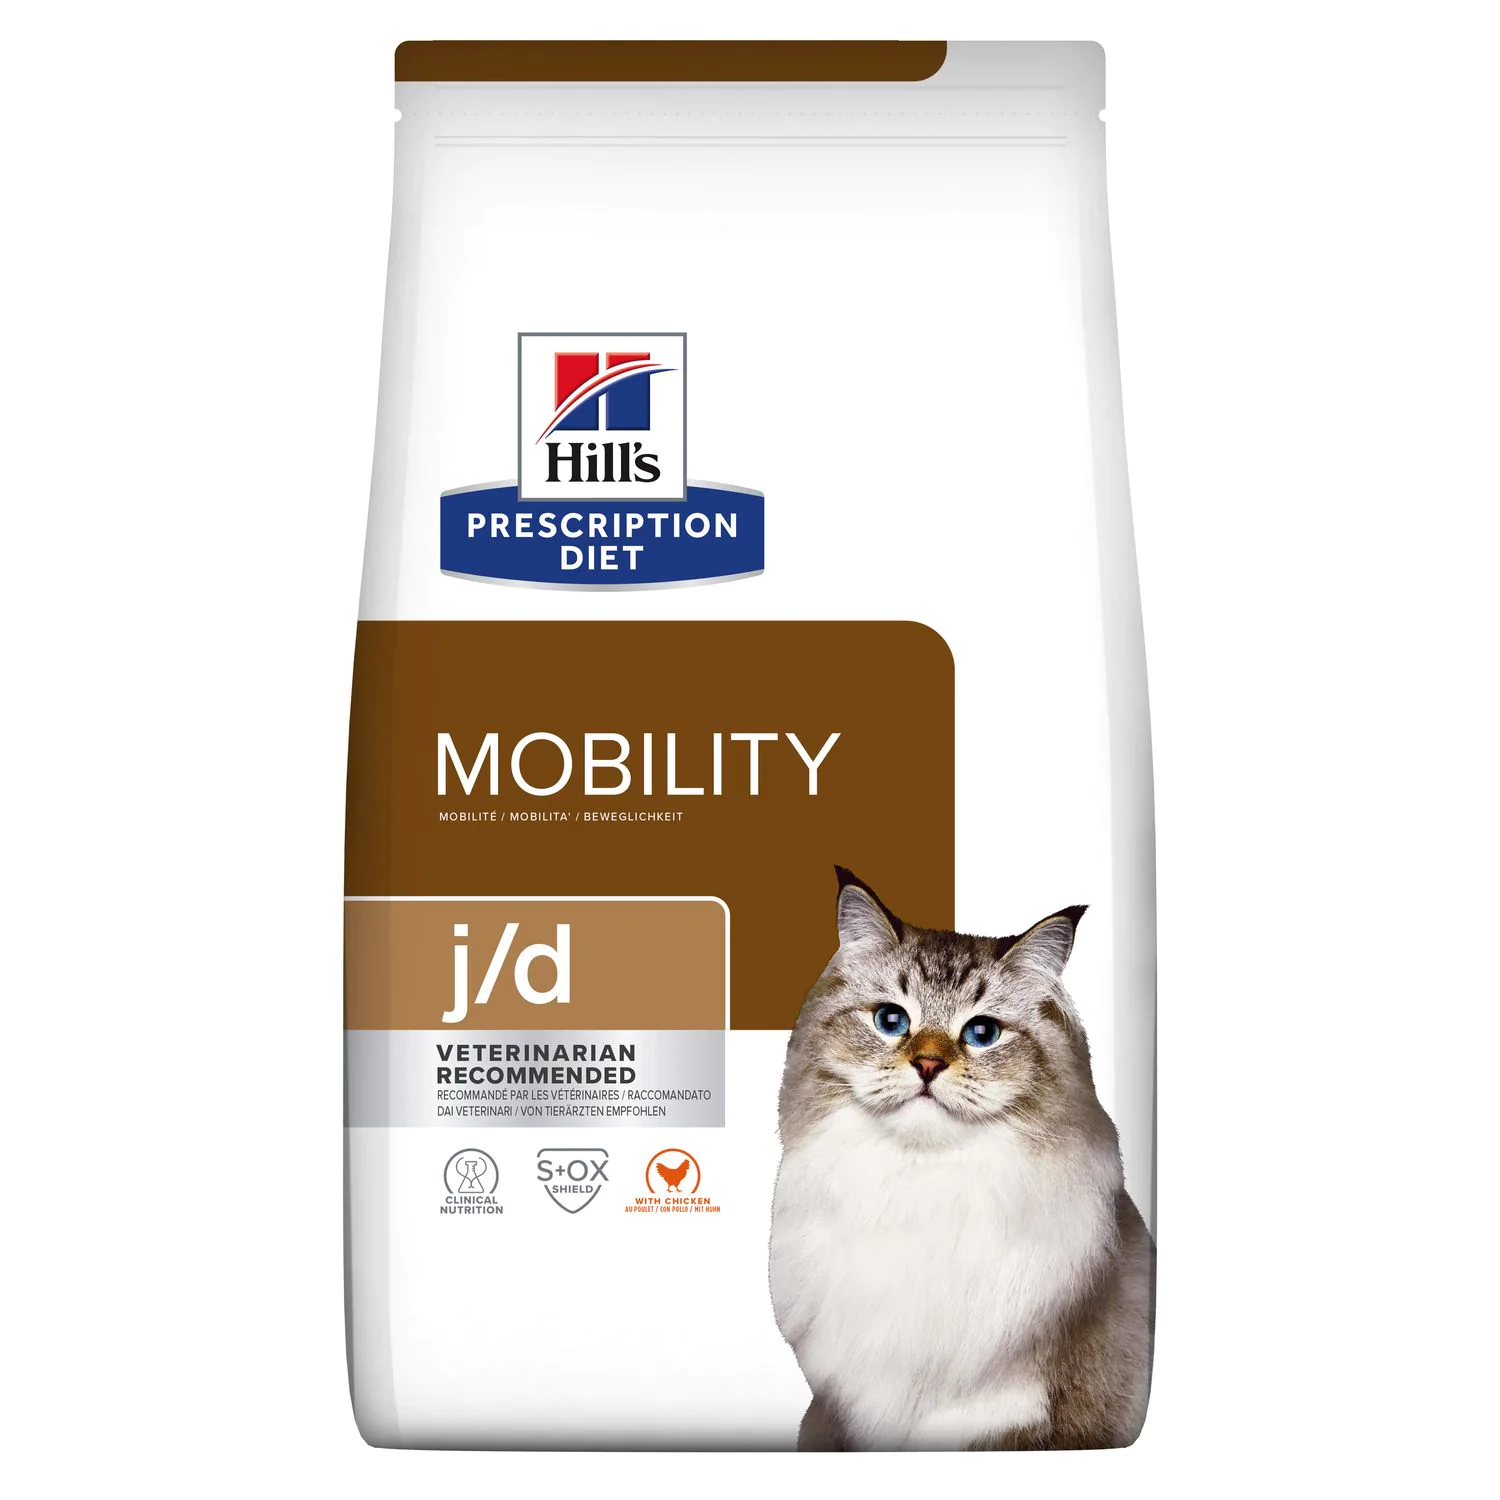 Ветеринарный сухой корм для кошек Hill's (Хиллс) Prescription Diet j/d Mobility, с курицей, 1,5 кг